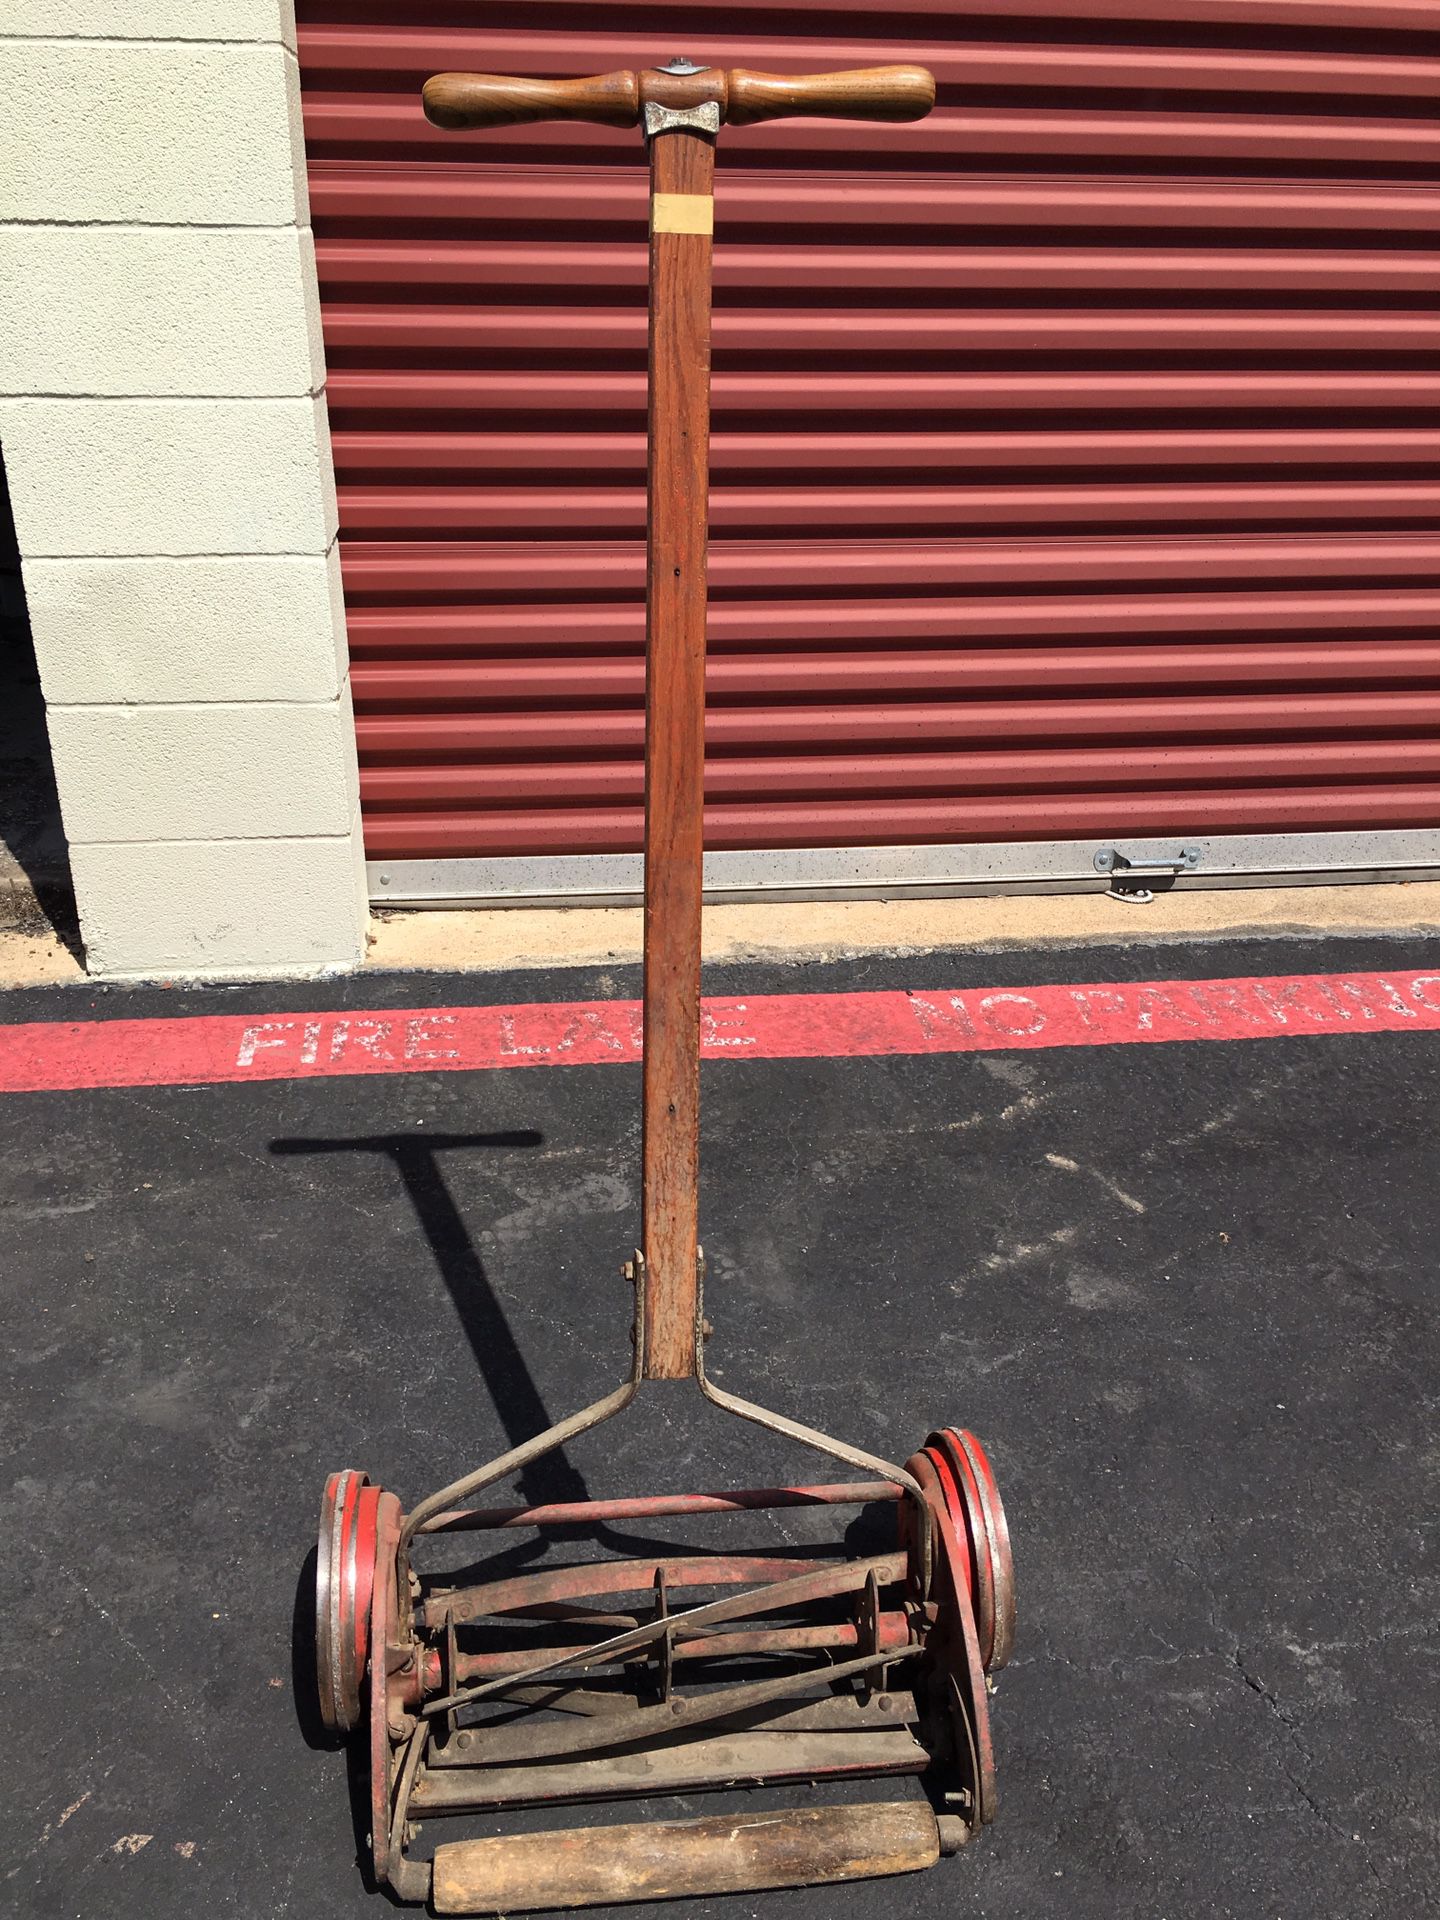 Vintage Reel mower